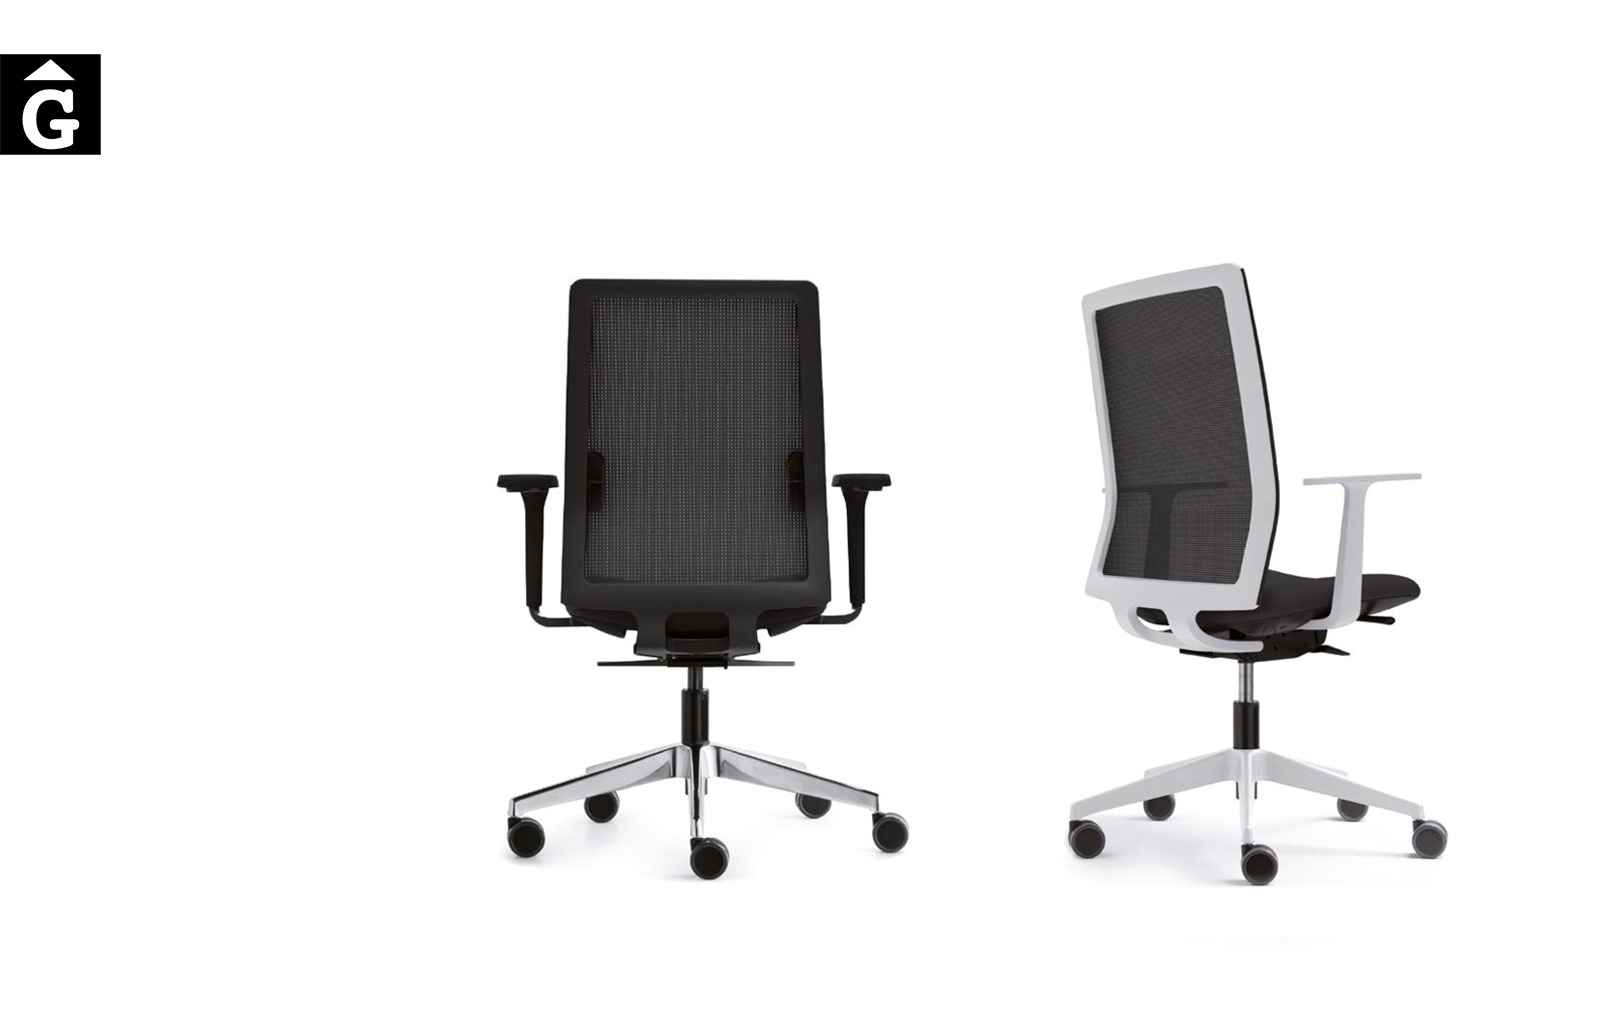 Cadira operativa Sentis | Blanc i negra | Forma 5 | mobiliari d’oficina molt interessant | mobles Gifreu | botiga | Contract | Mobles nous d’oficina